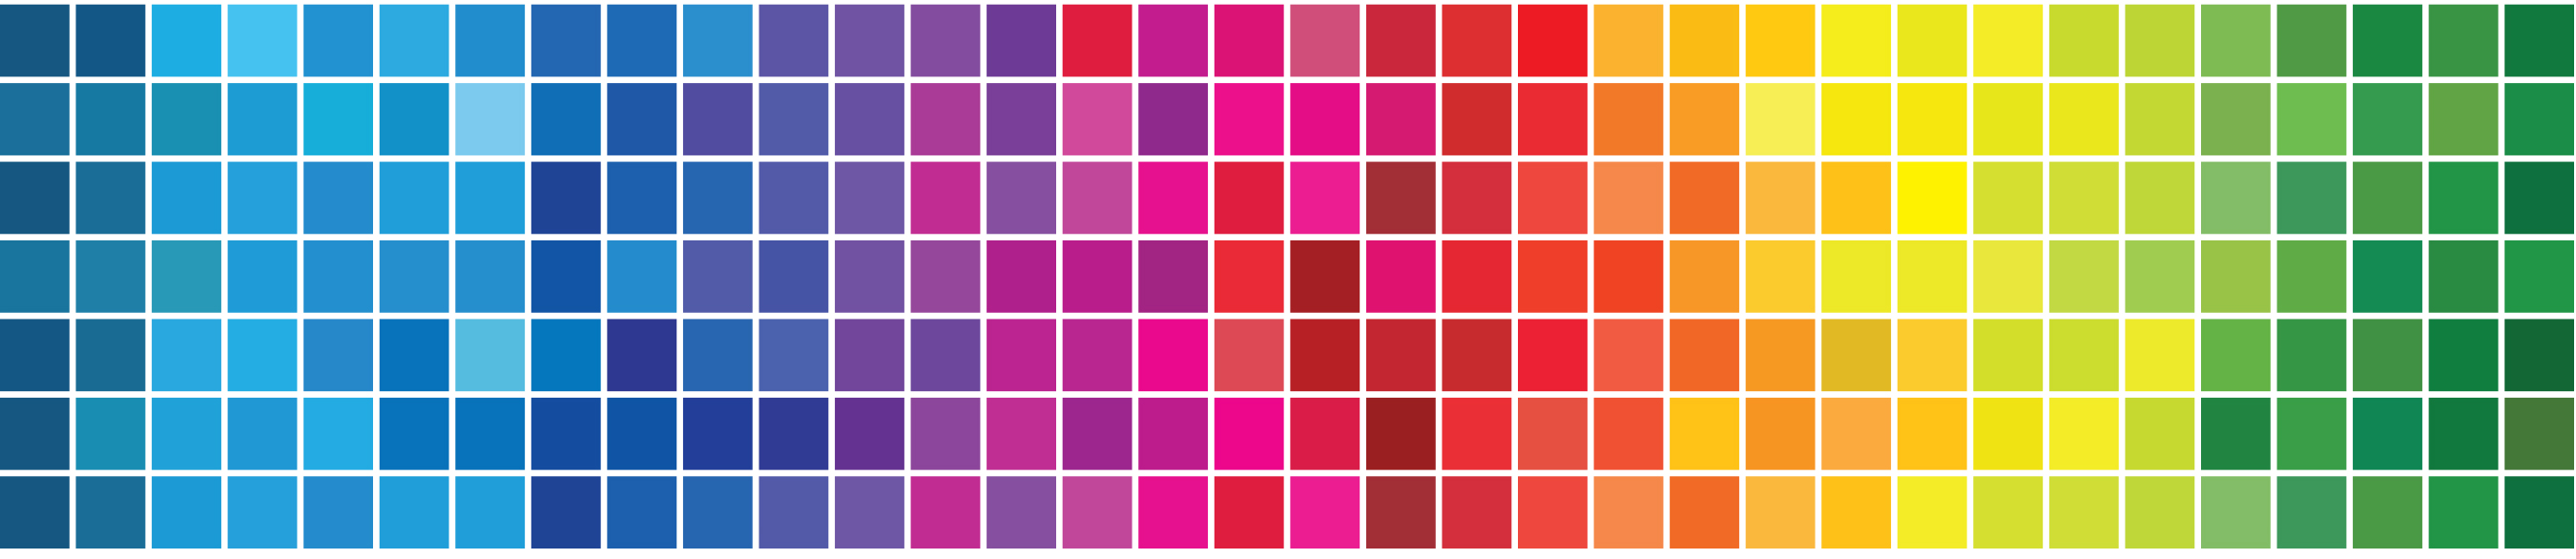 Colour-Bar